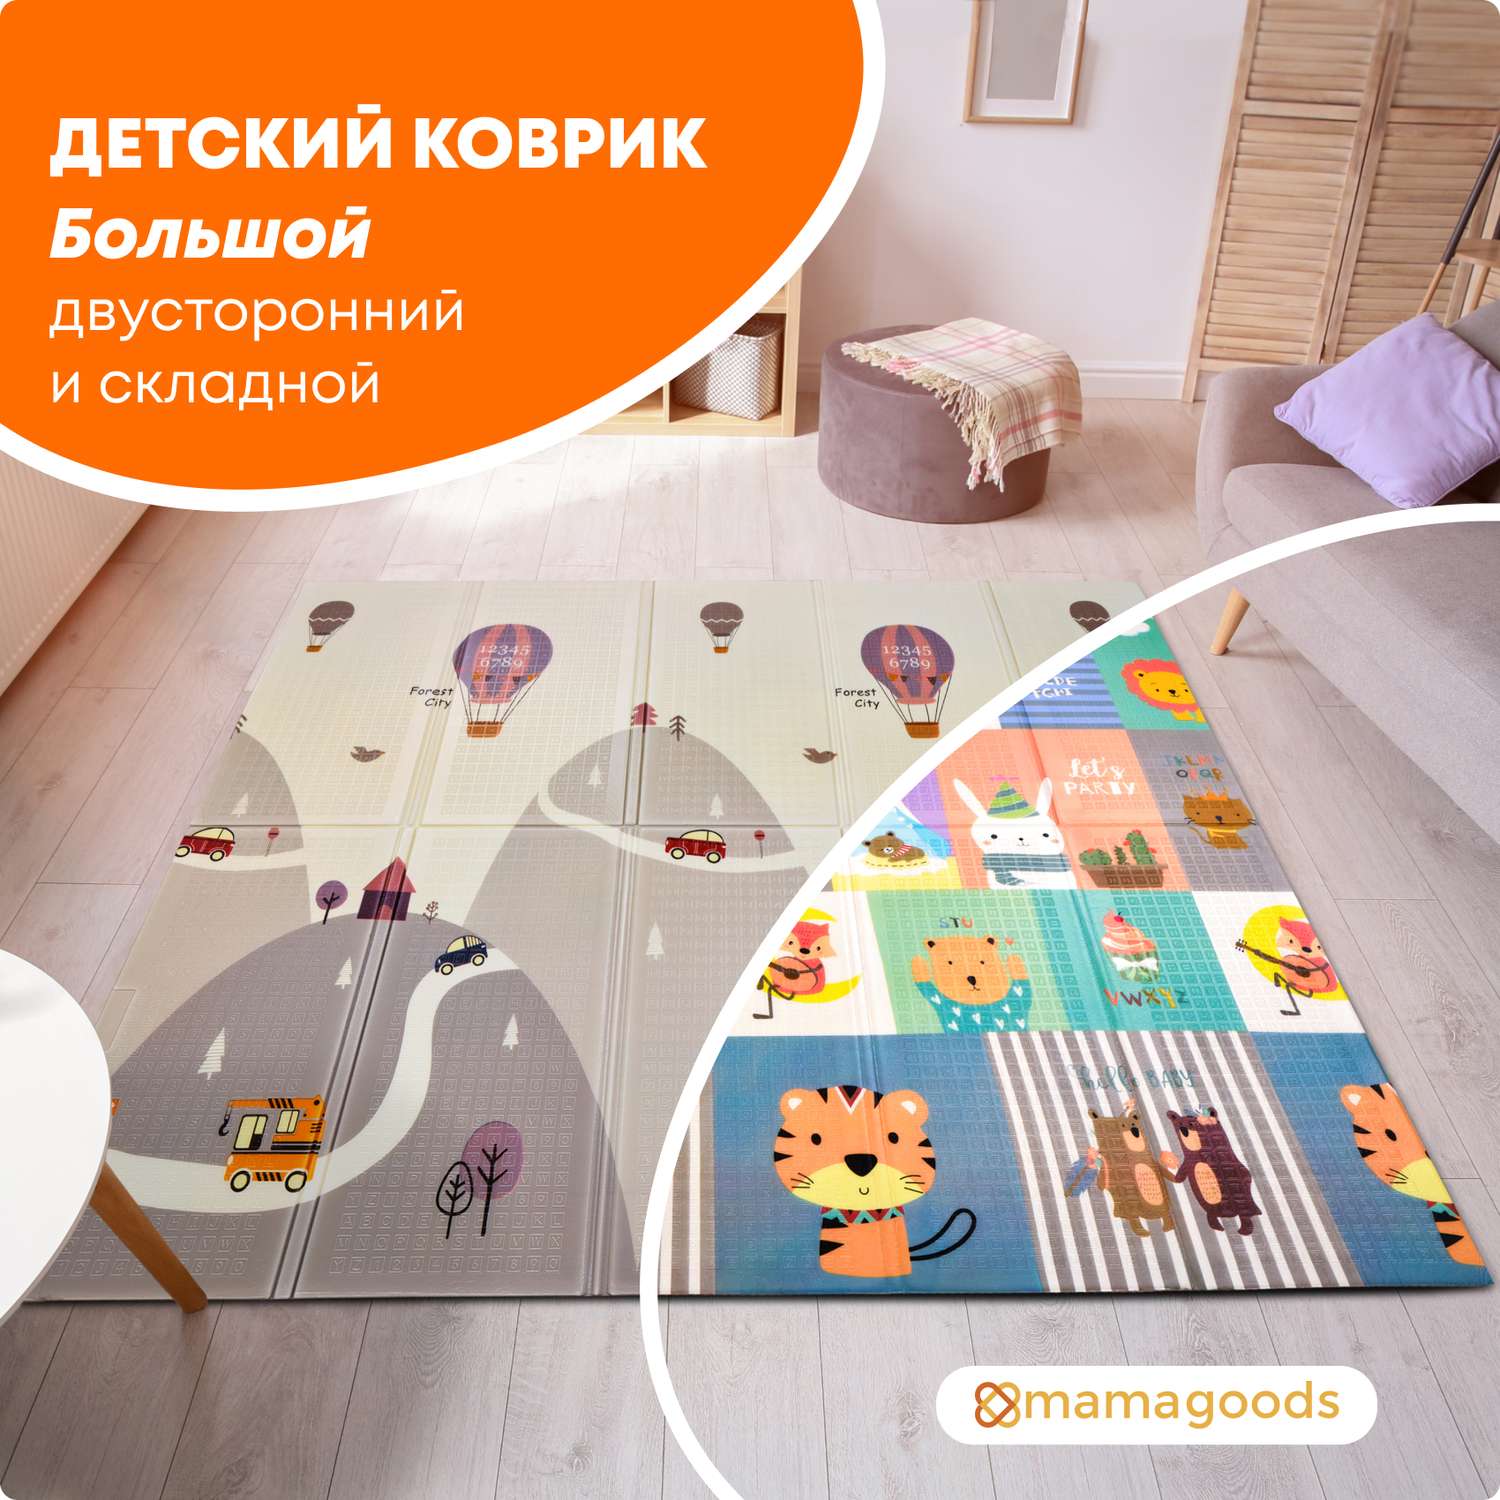 Развивающие коврики с бортиками — купить в Москве в ростовсэс.рф